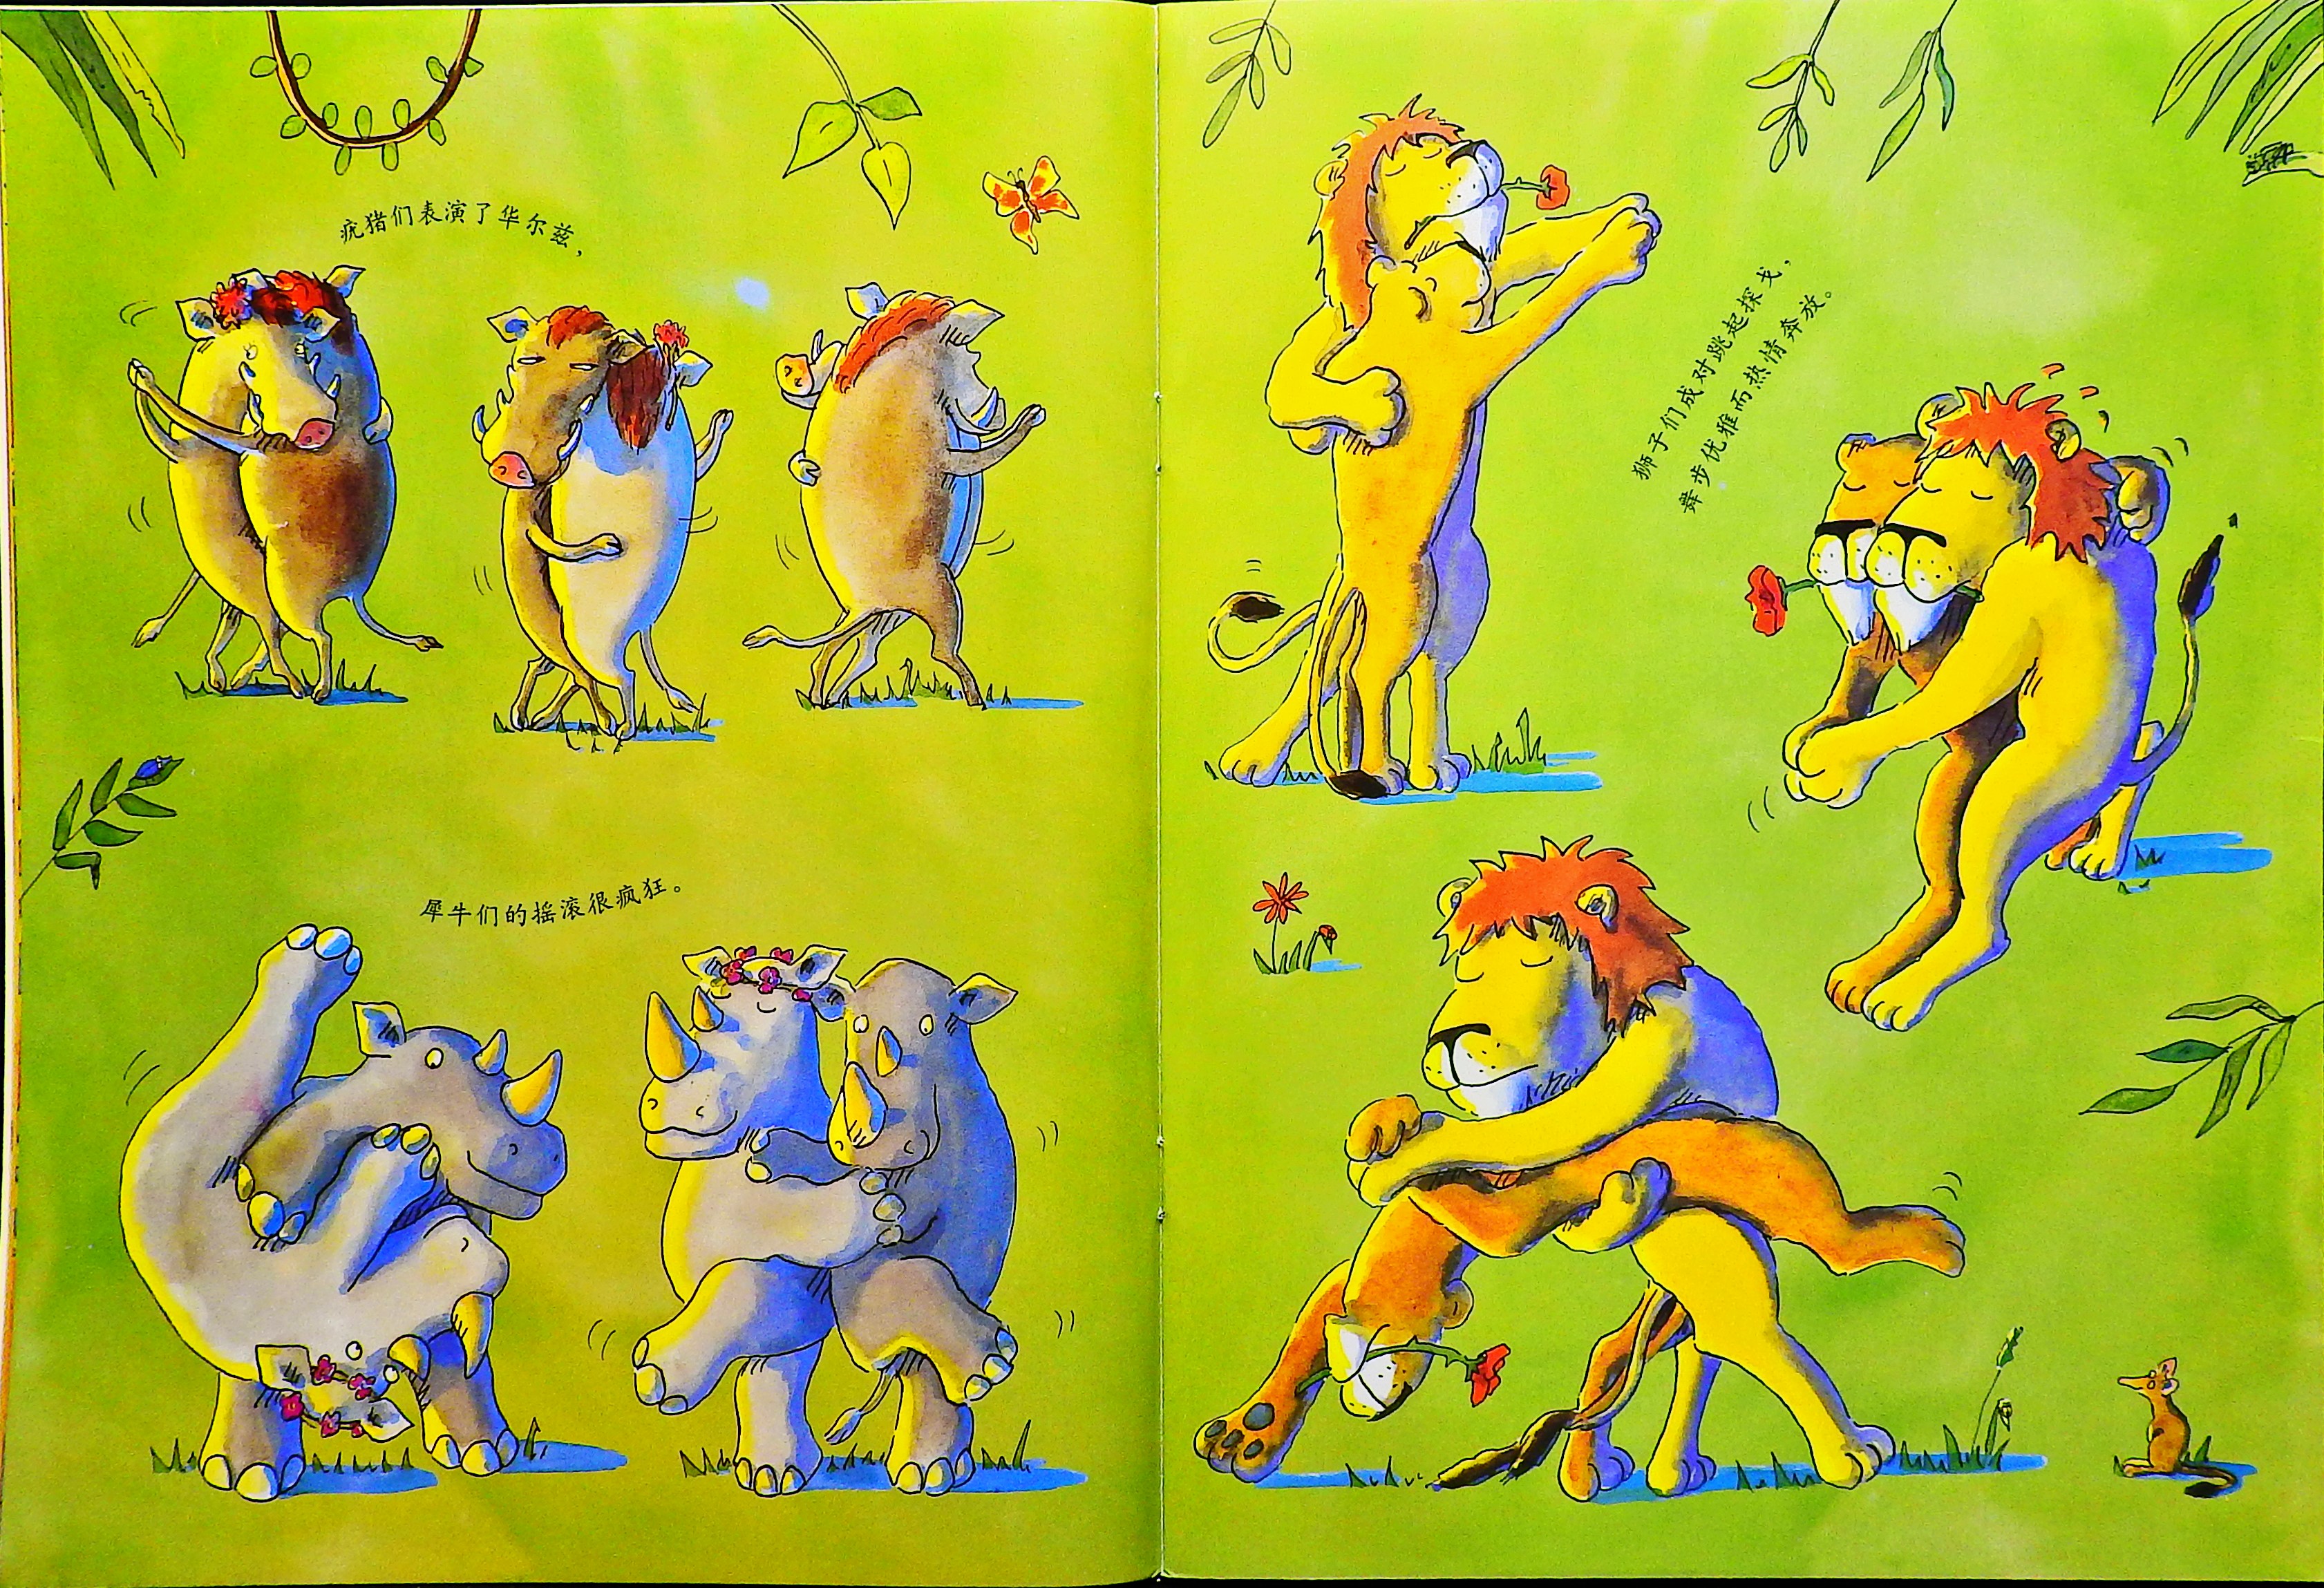 长颈鹿不会跳舞 (06),绘本,绘本故事,绘本阅读,故事书,童书,图画书,课外阅读